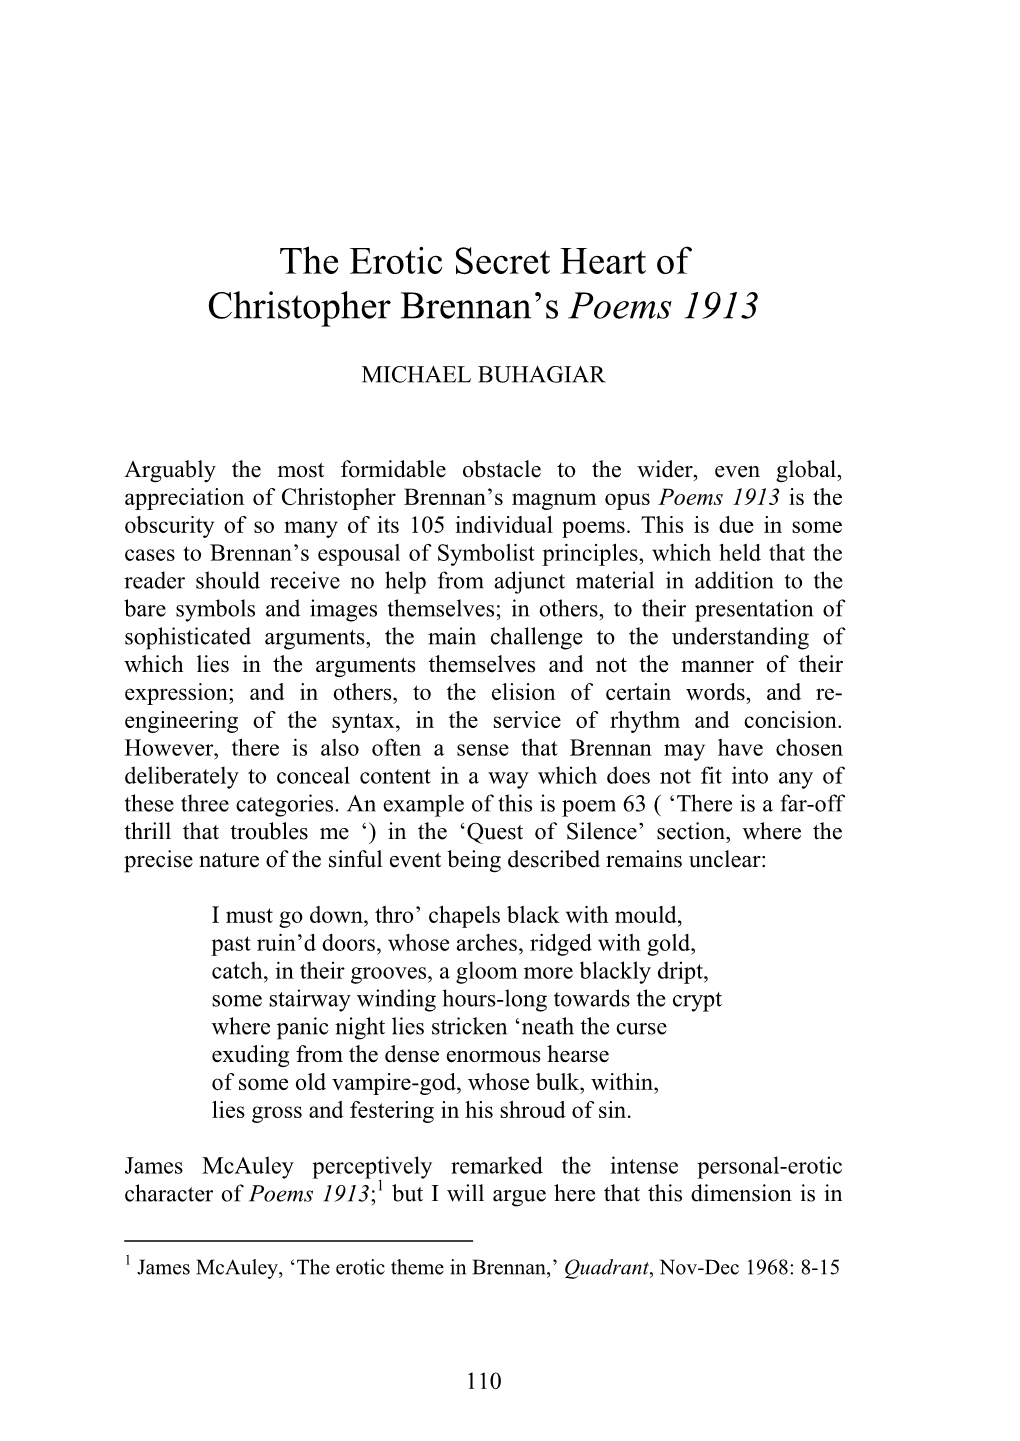 The Erotic Secret Heart of Christopher Brennan's Poems 1913